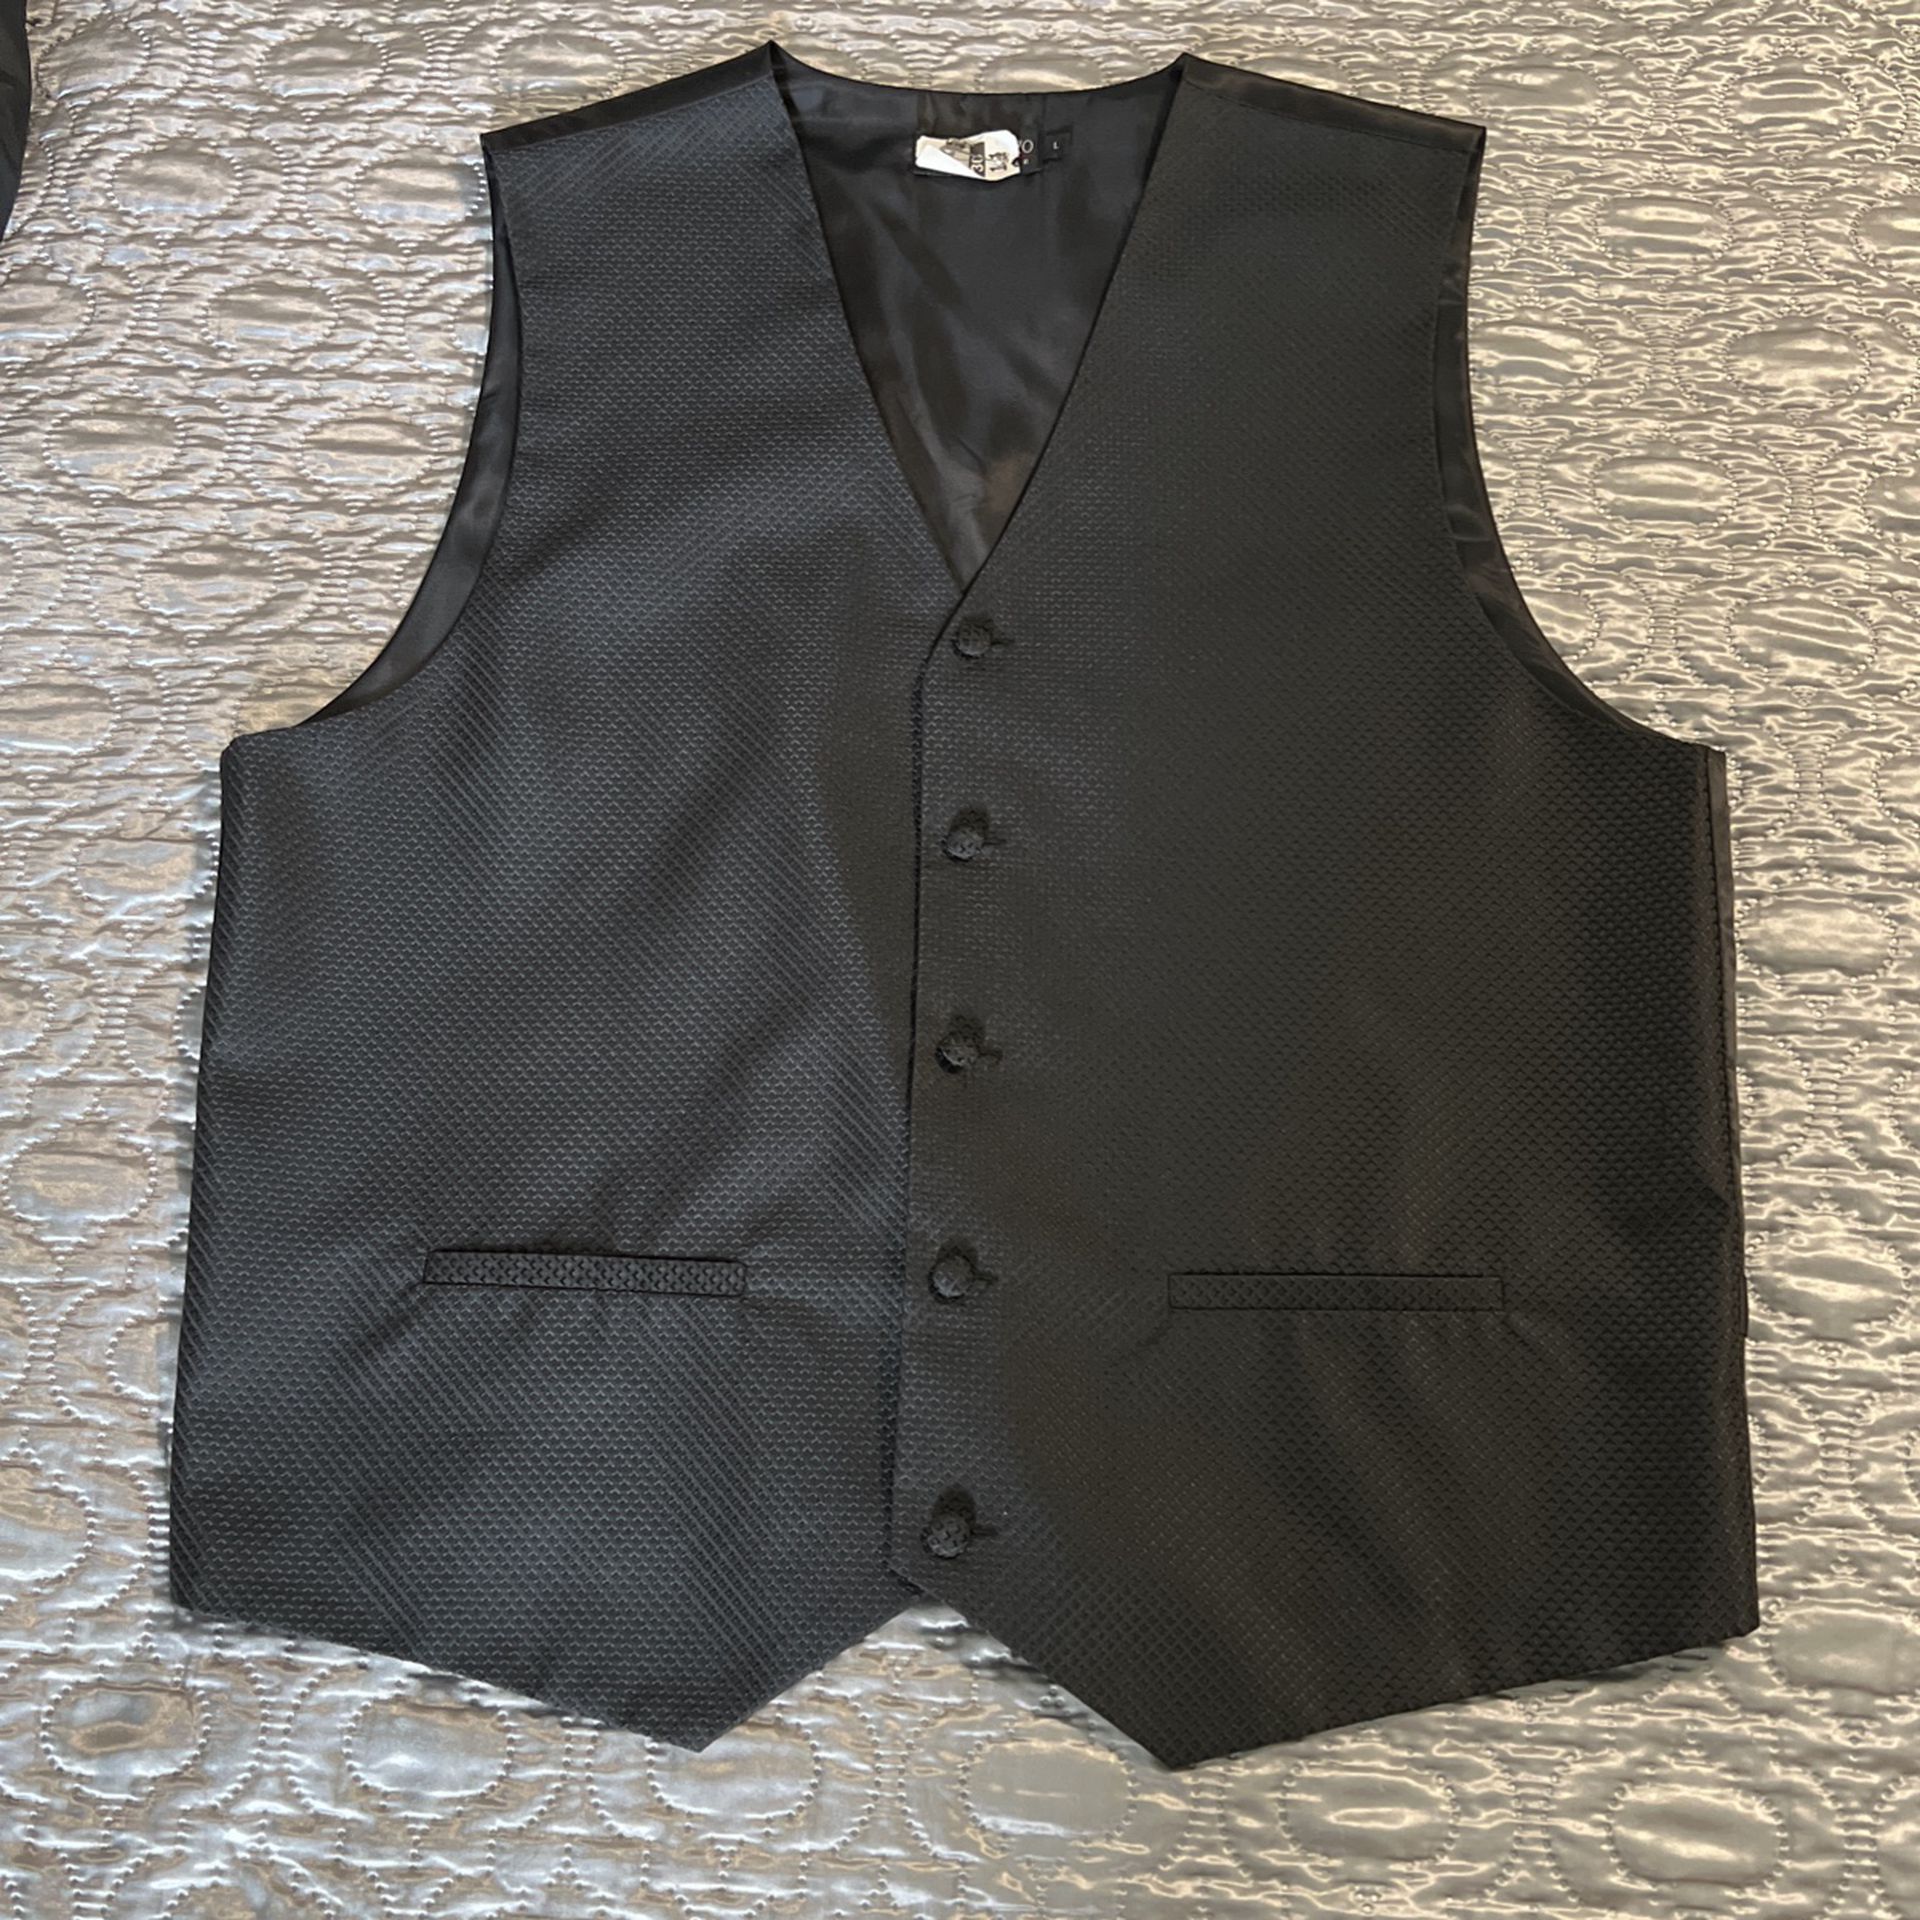 2 Men’s Suit Vests $10 Each 